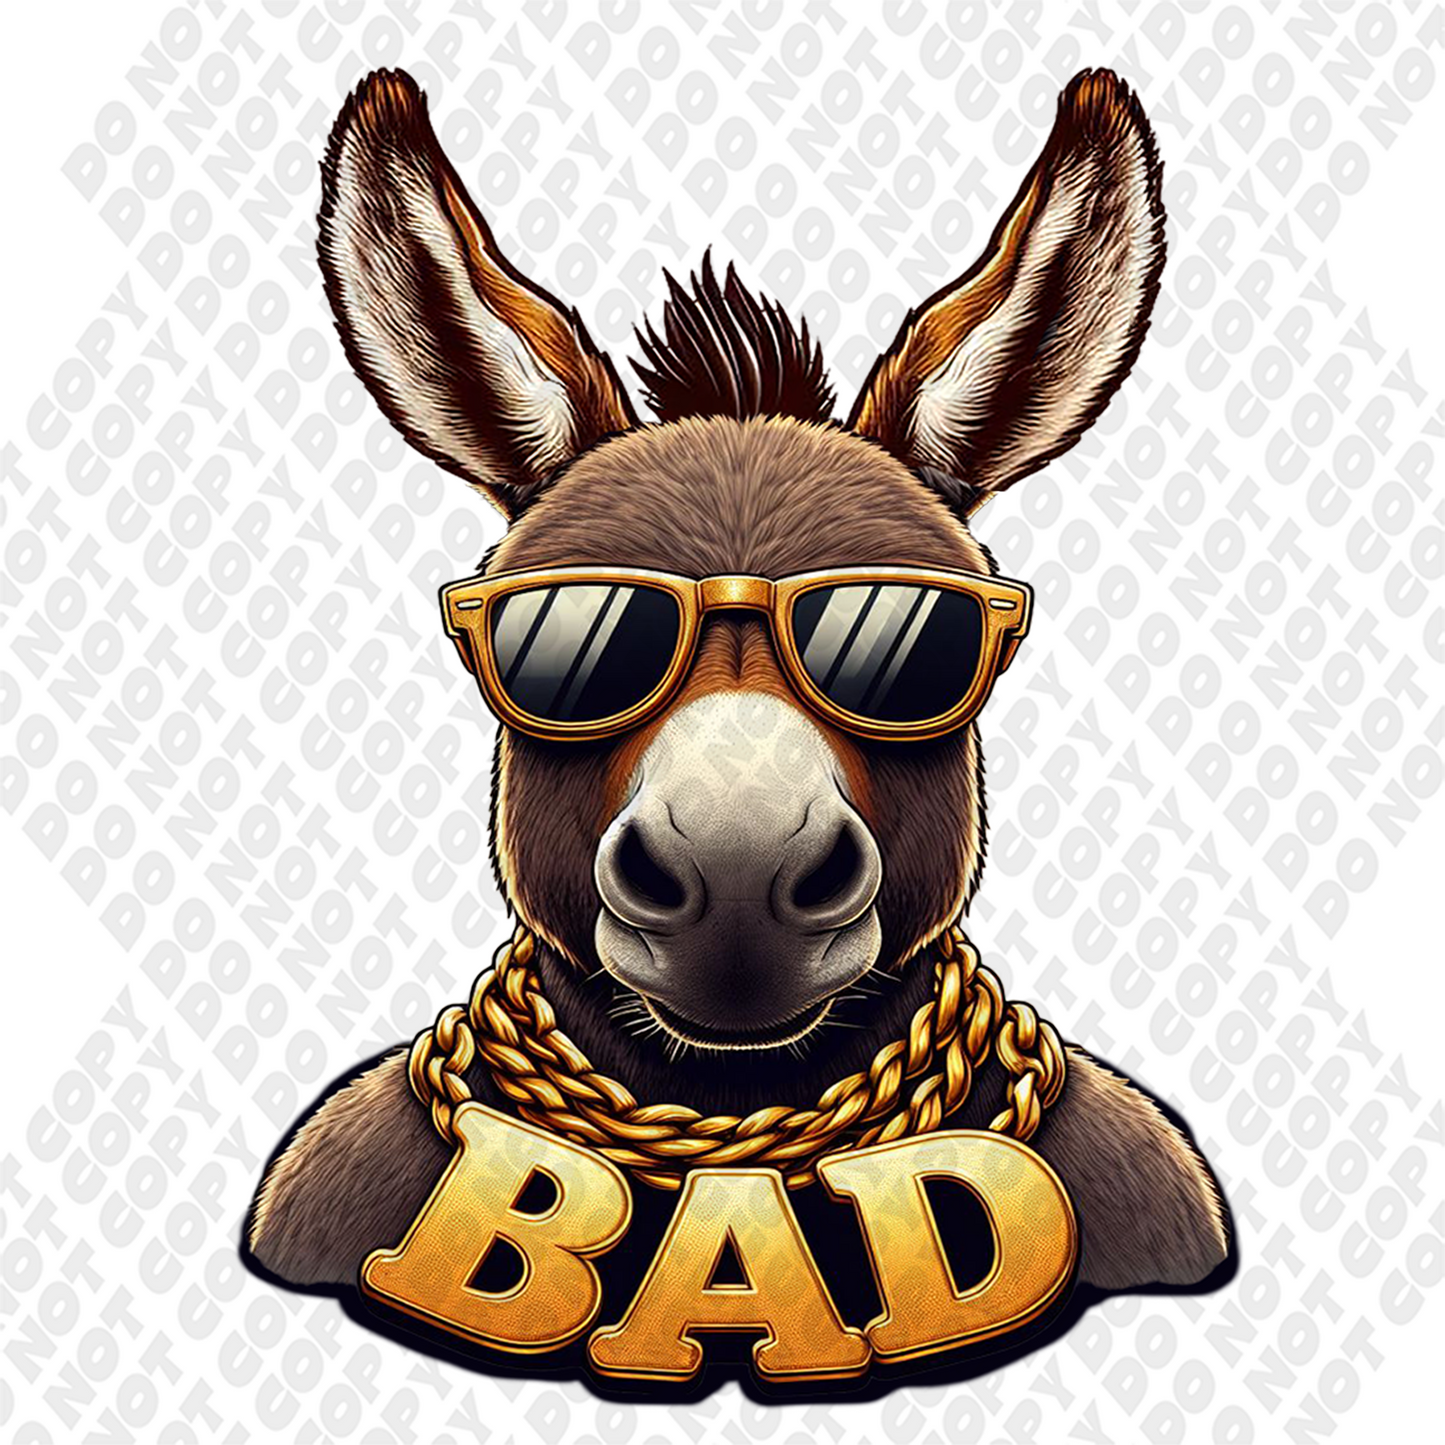 Bad A$$ Donkey DTF Transfer